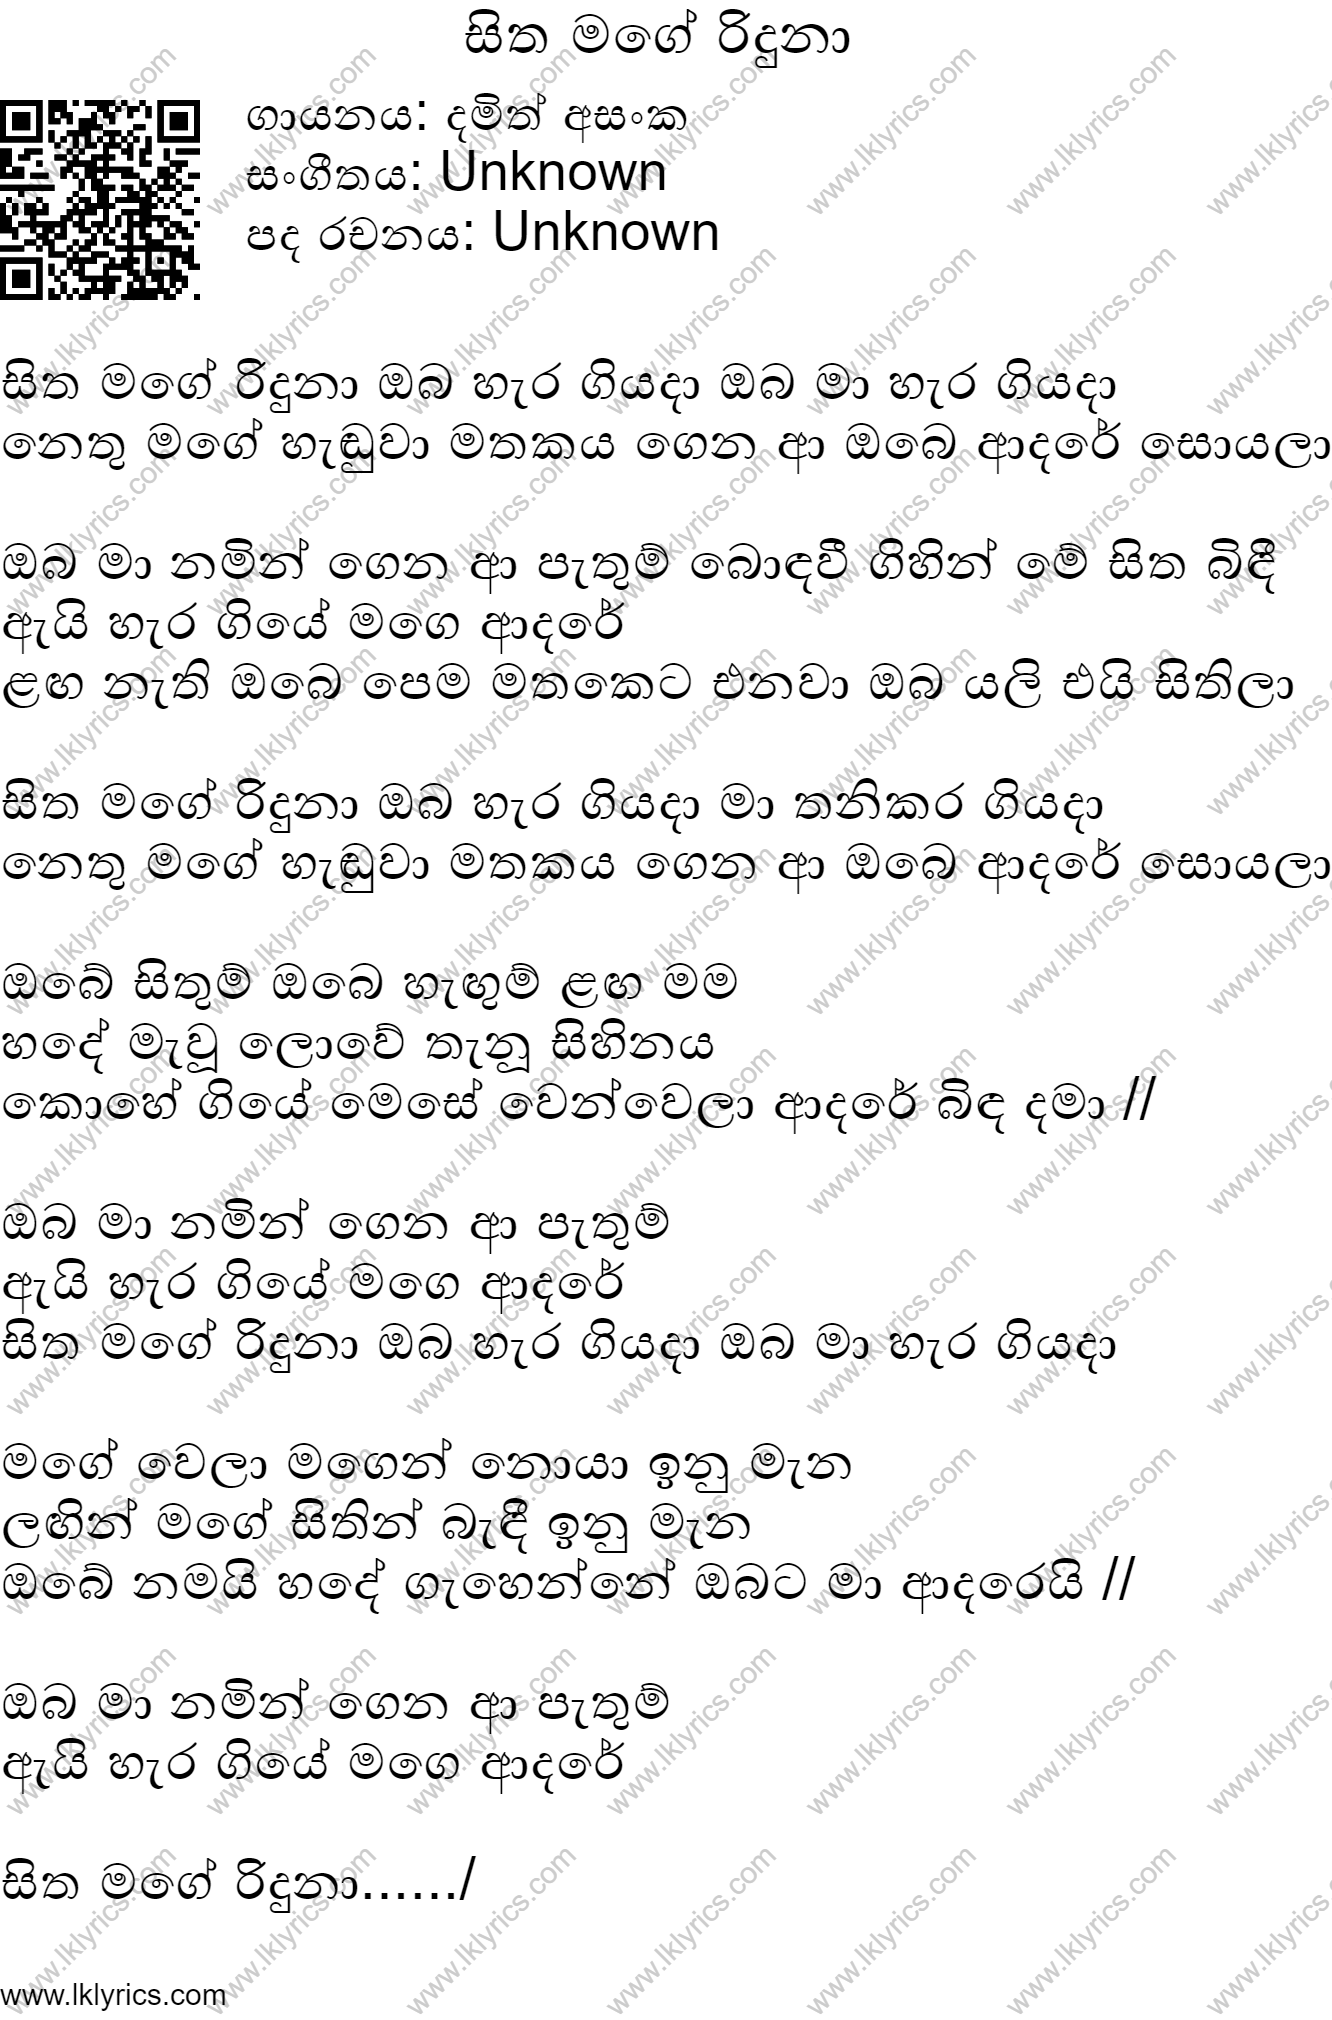 Sitha Mage Riduna Oba Hera Giyada Lyrics